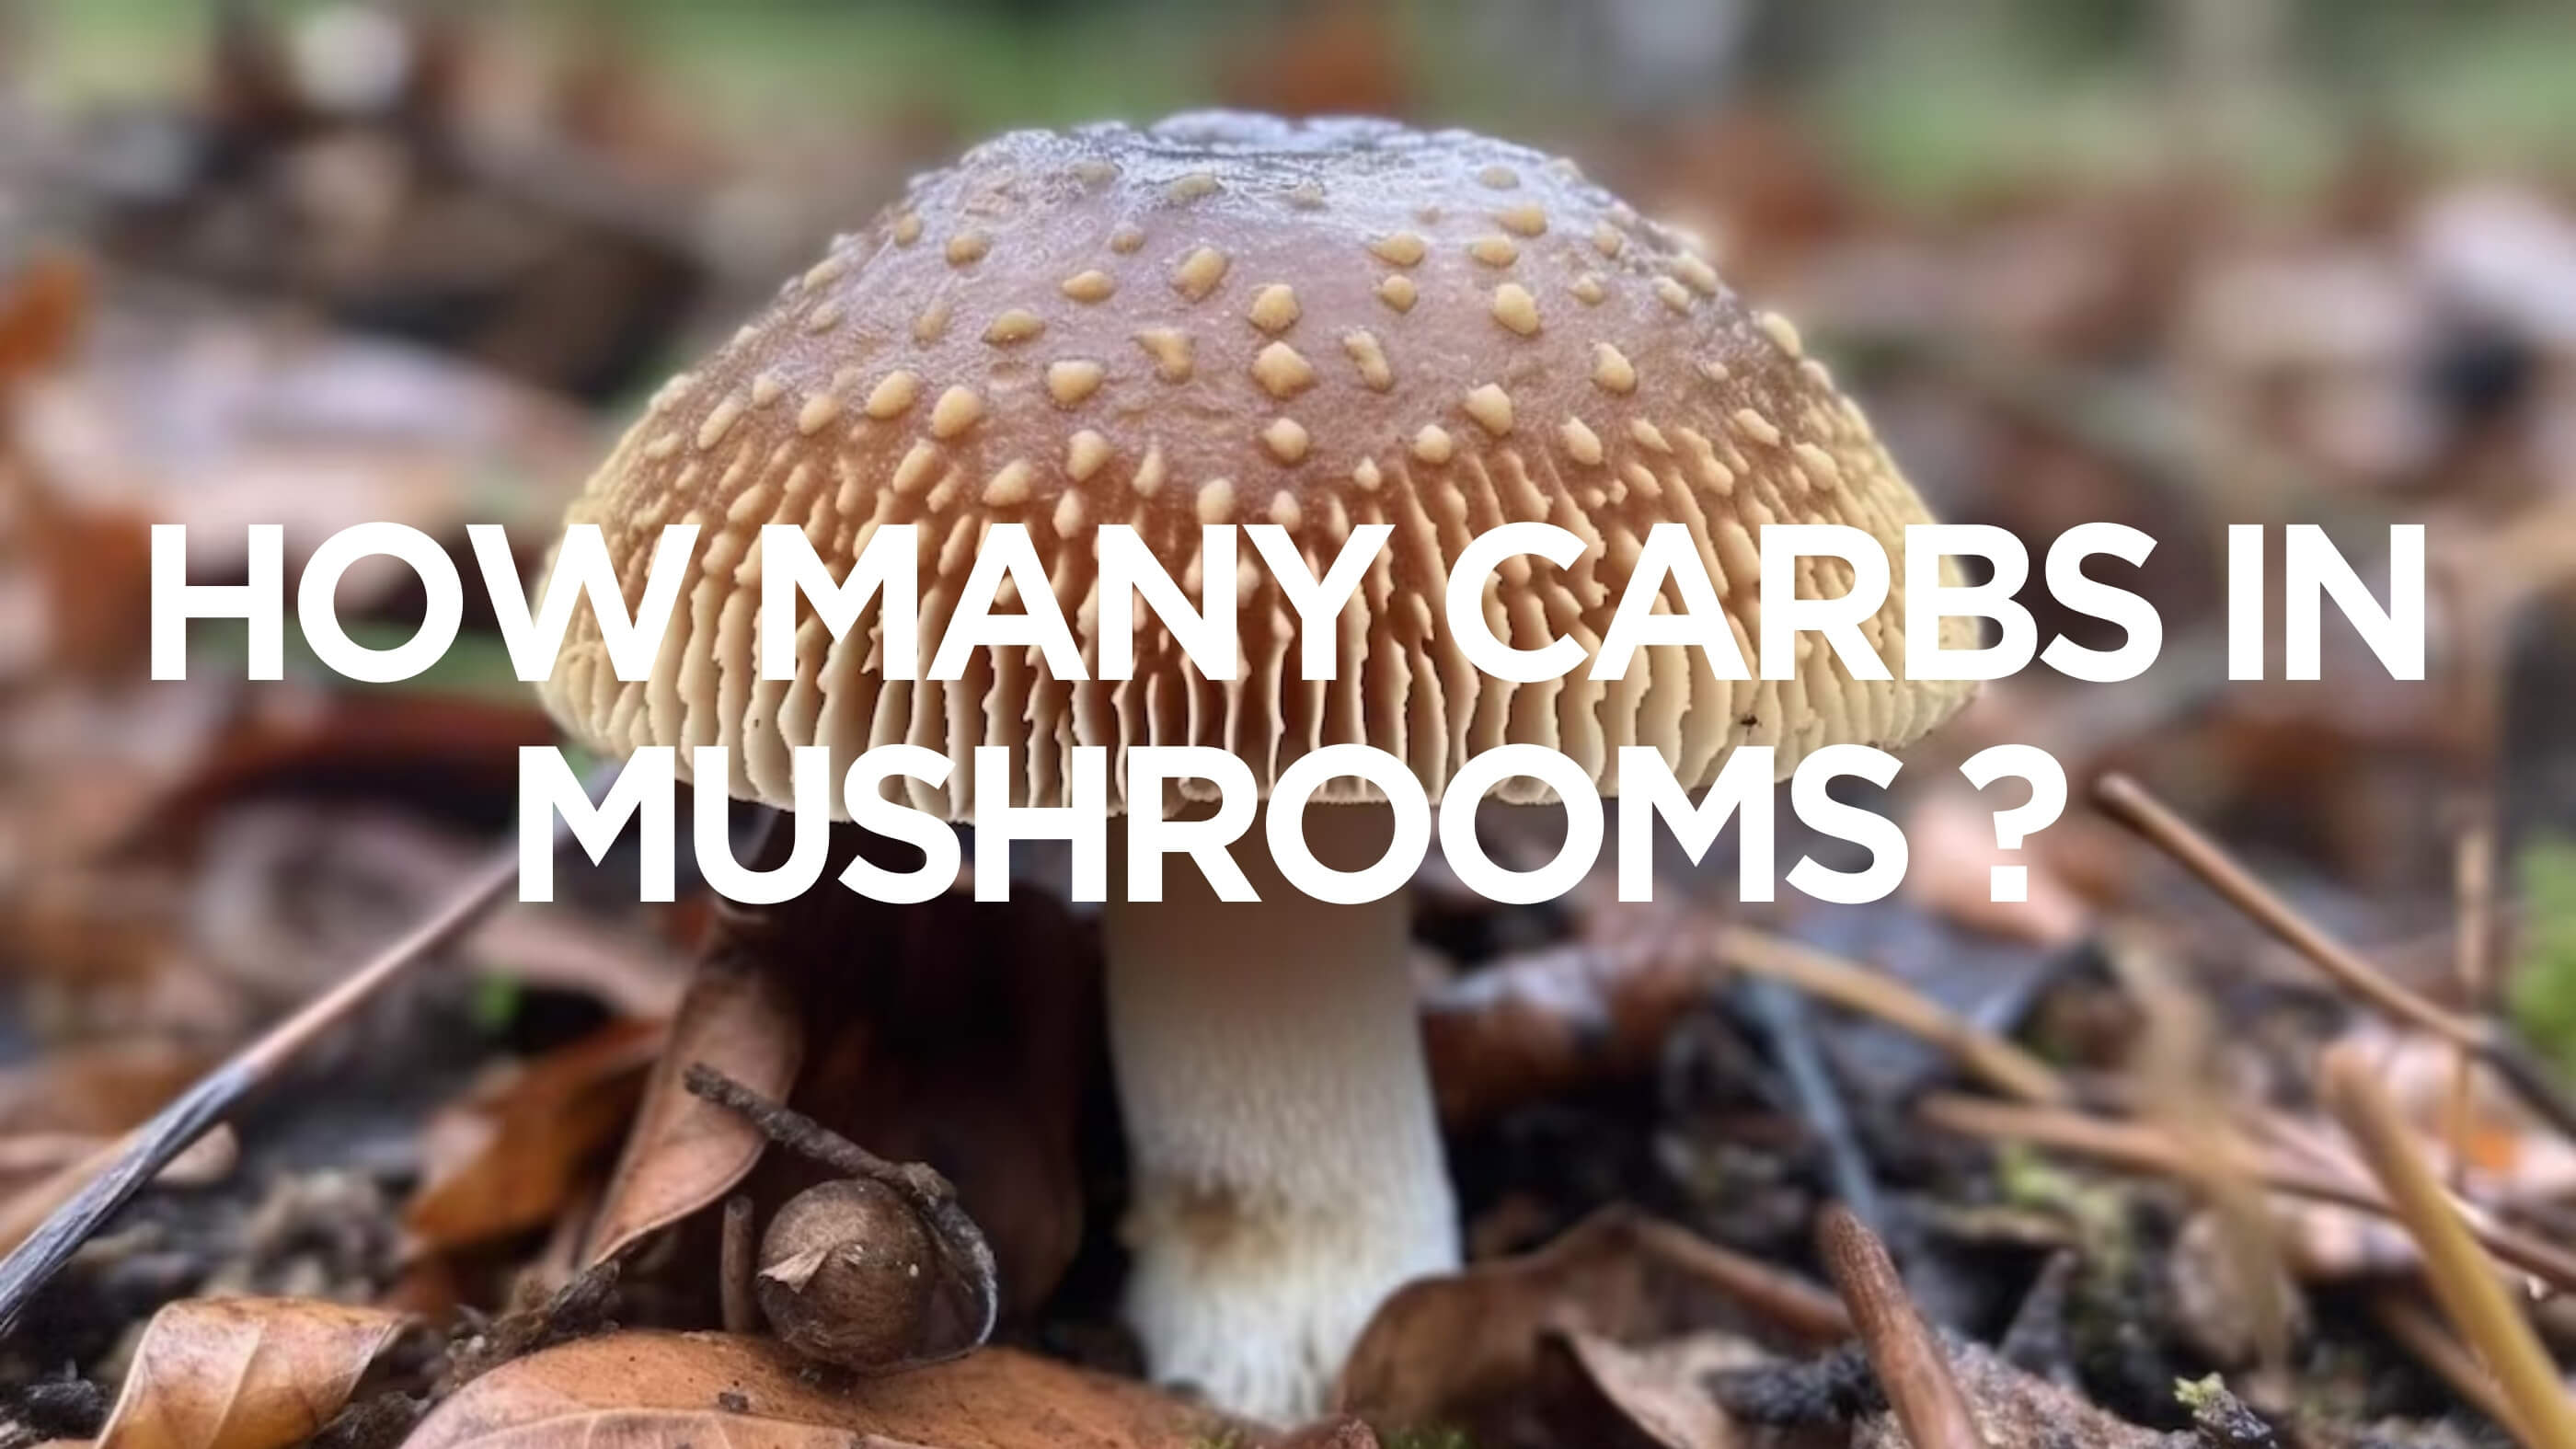 How Many Carbs Do Magic Mushrooms Contain?